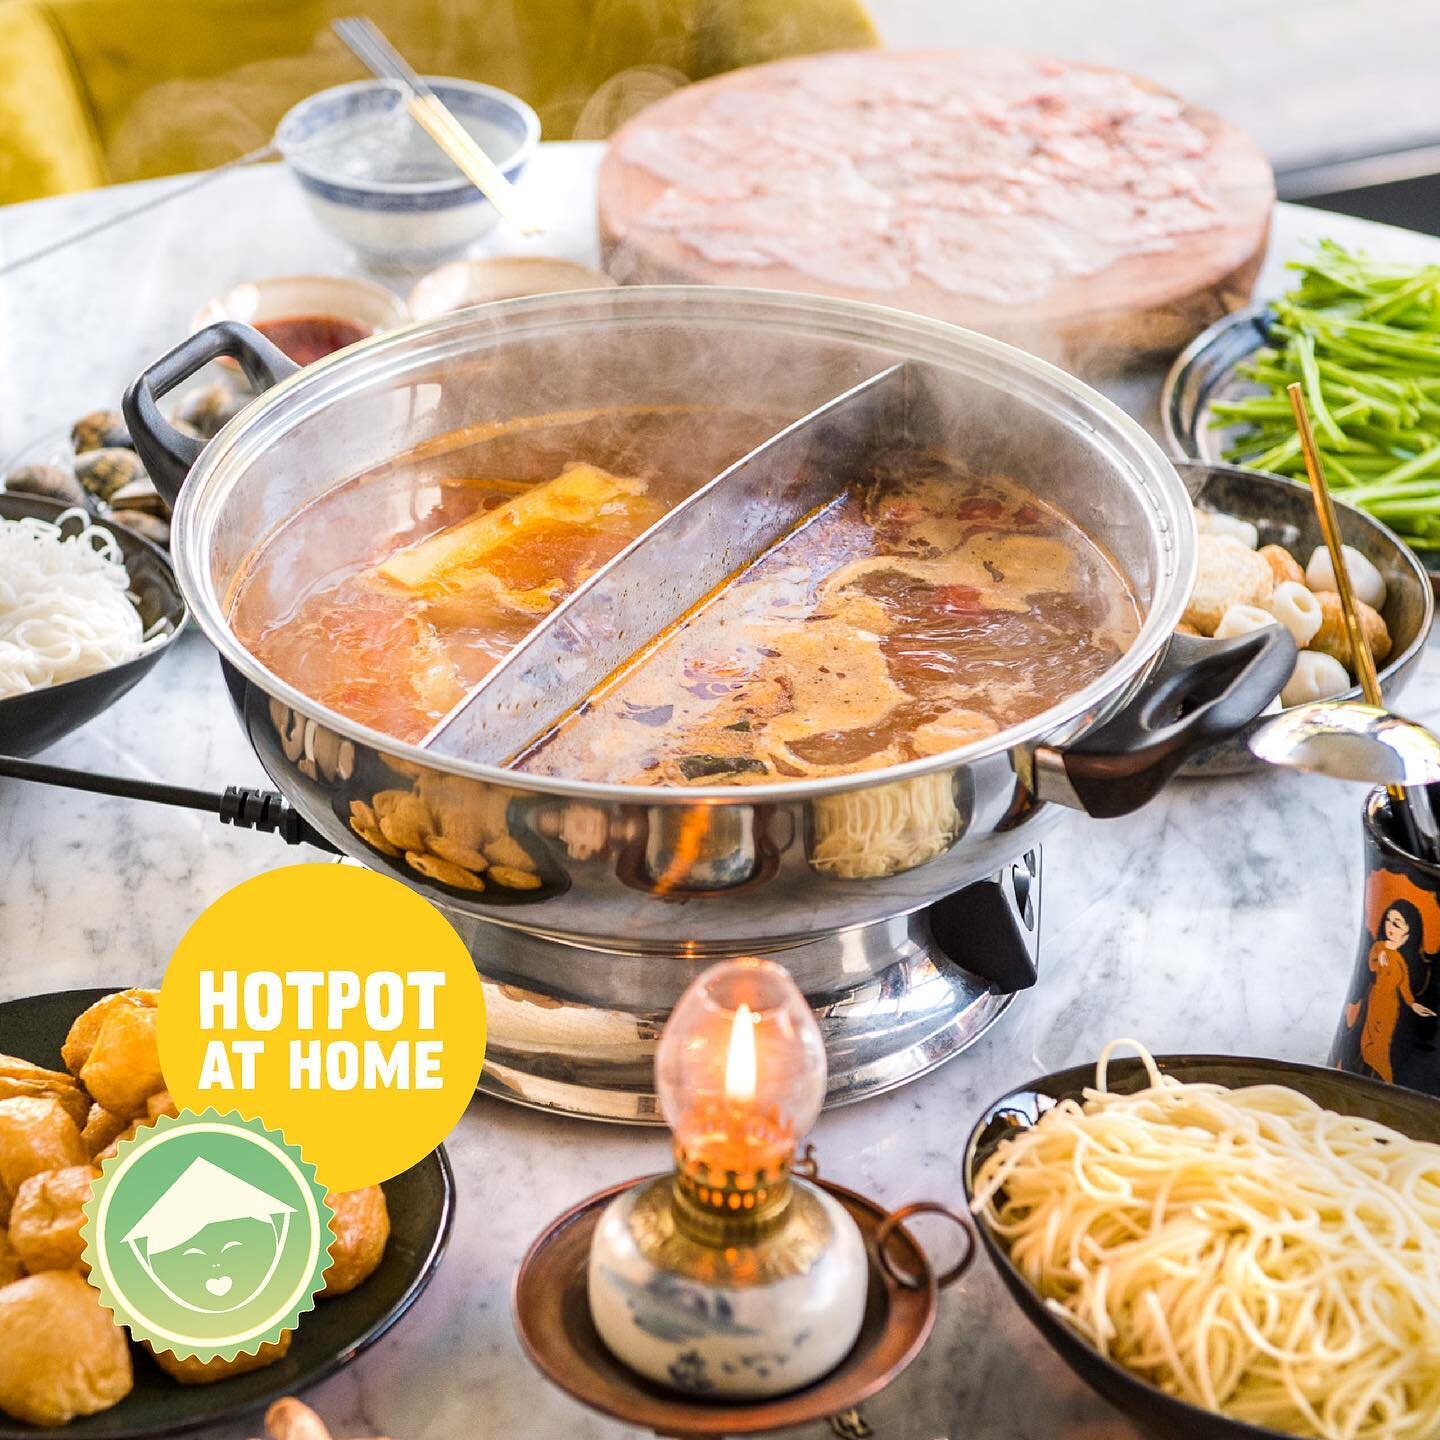 VIETNAMAMA'S HOTPOT AT HOME
Vietnamama style, deluxe of vegan. Onze heerlijke en hartverwarmende hotpot maakt van ieder etentje een memorabele avond.
&bull;
NIEUW: seafood bouillon en curry bouillon.
Je ontvangt standaard een zoetzure (kip) bouillon 